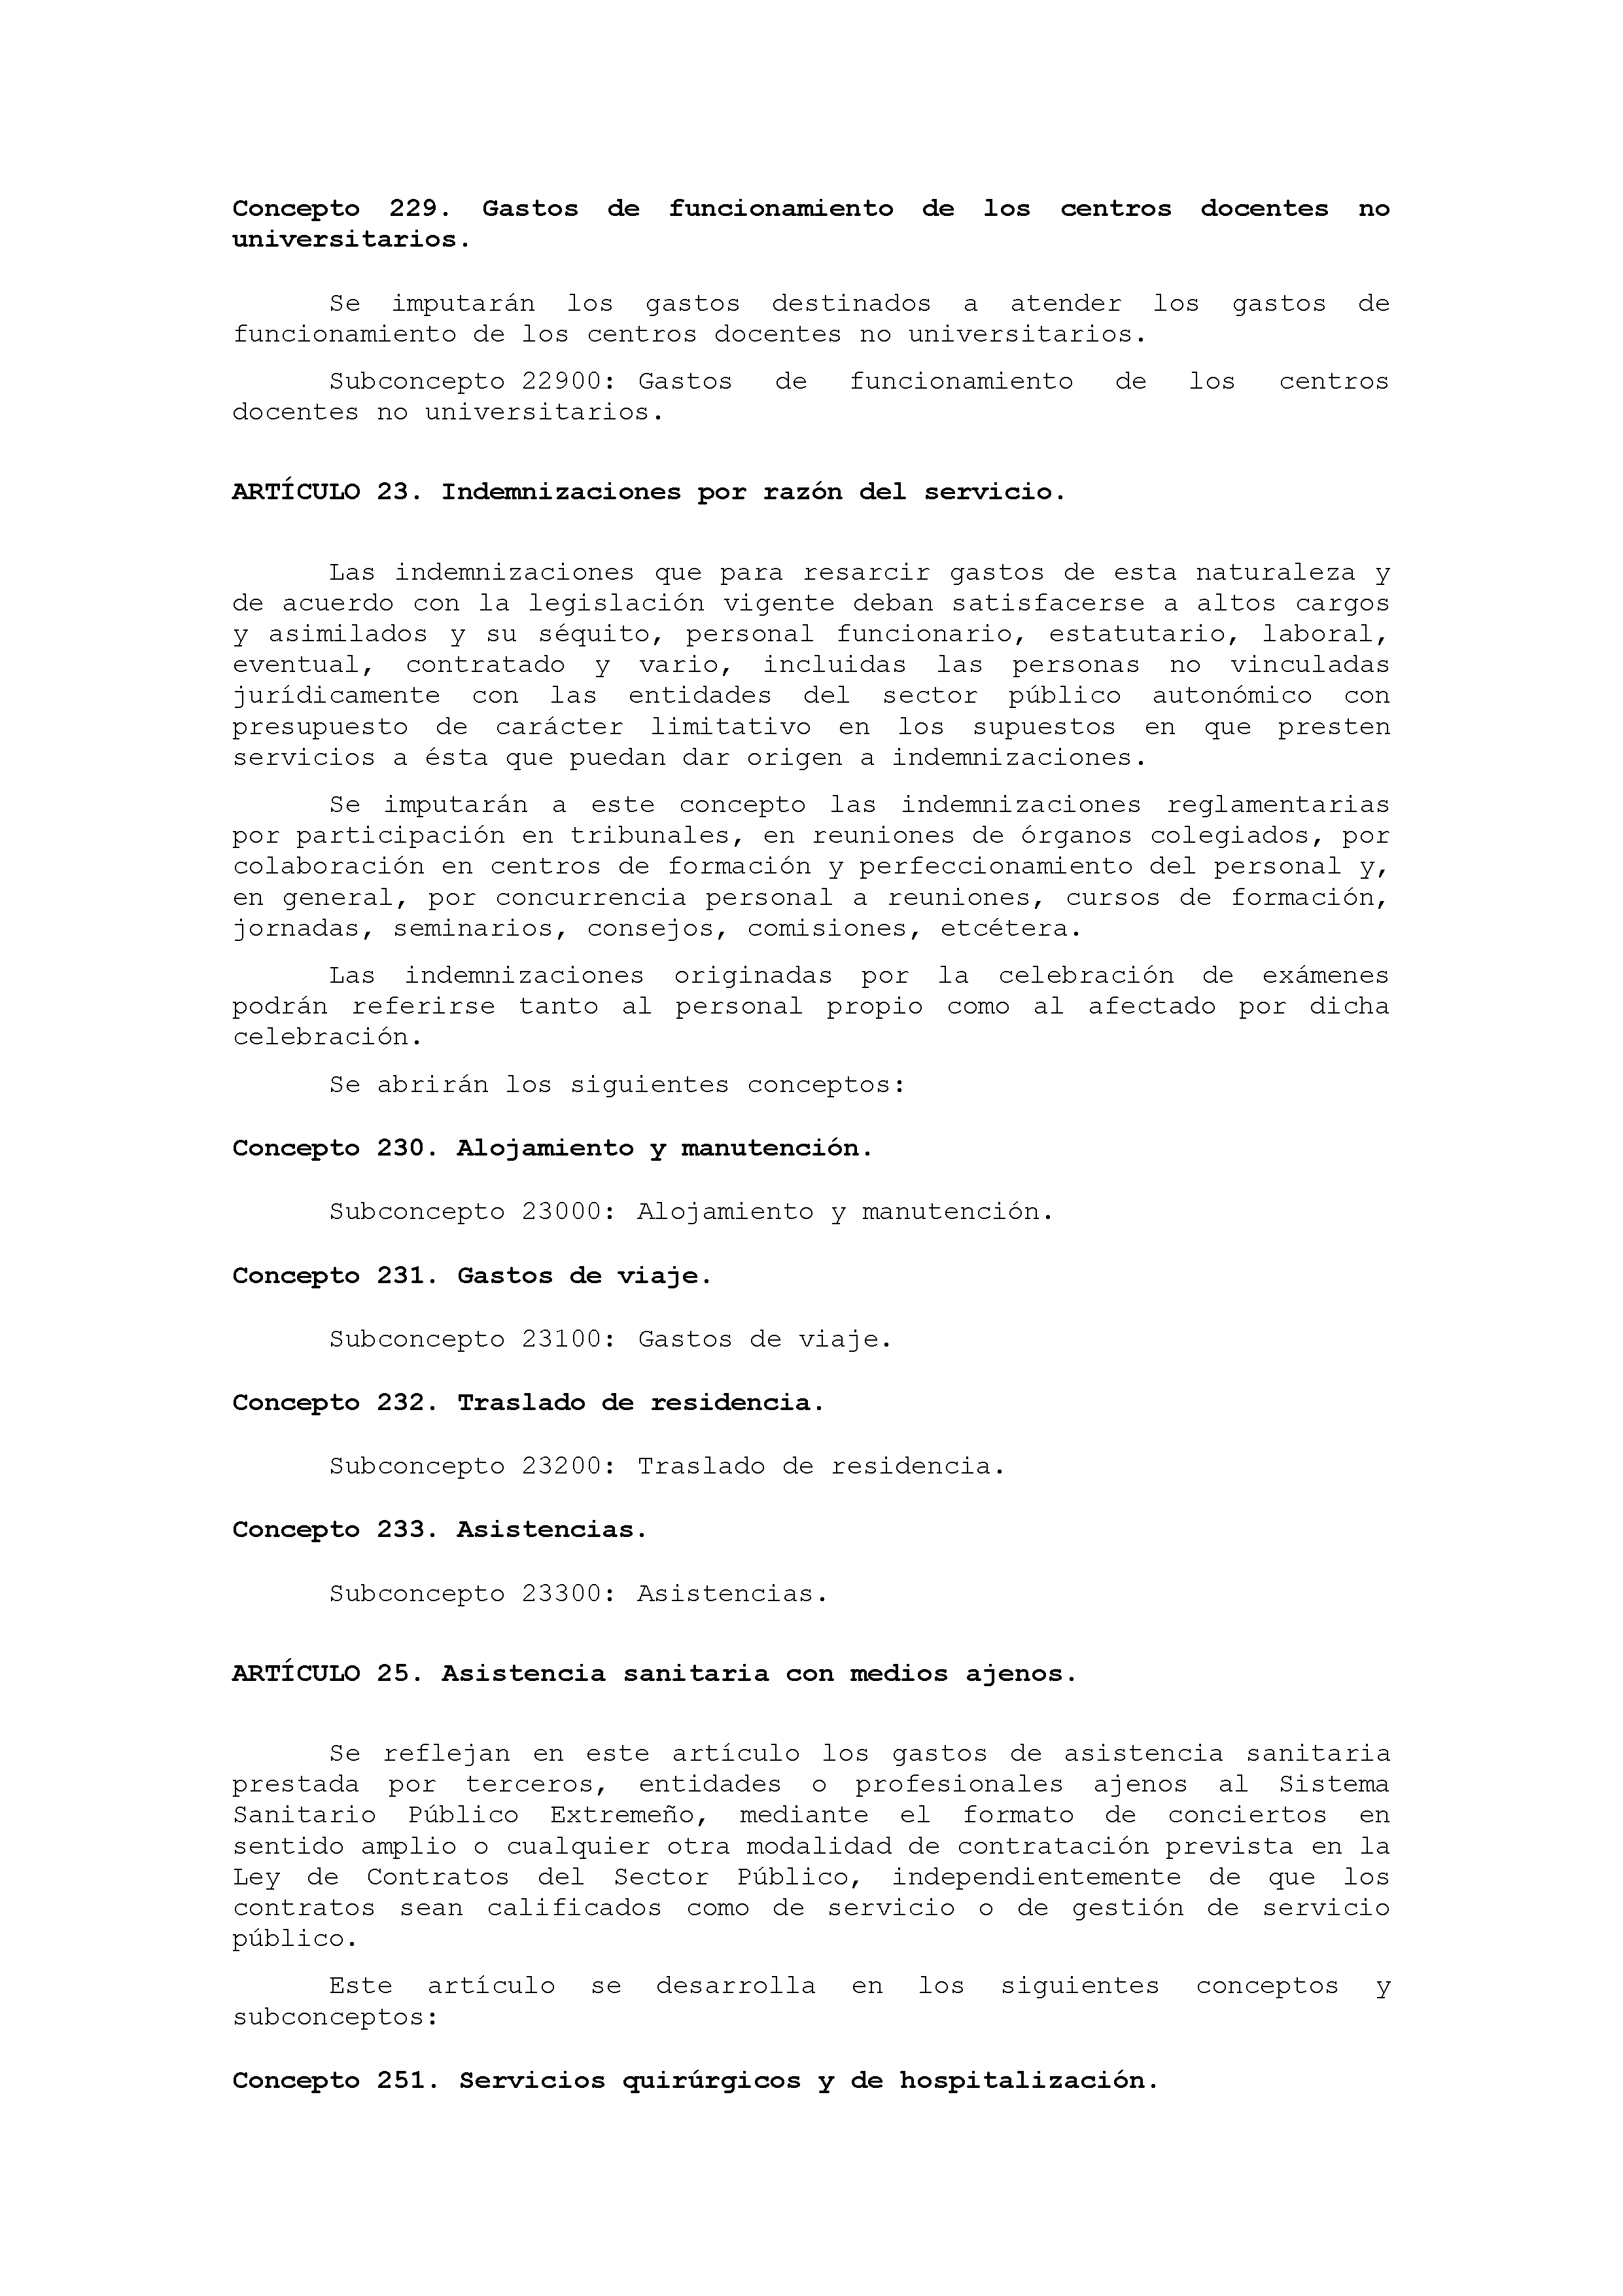 ANEXO IX CÓDIGO DE LA CLASIFICACIÓN ECONÓMICA DE LOS GASTOS PÚBLICOS Pag 24